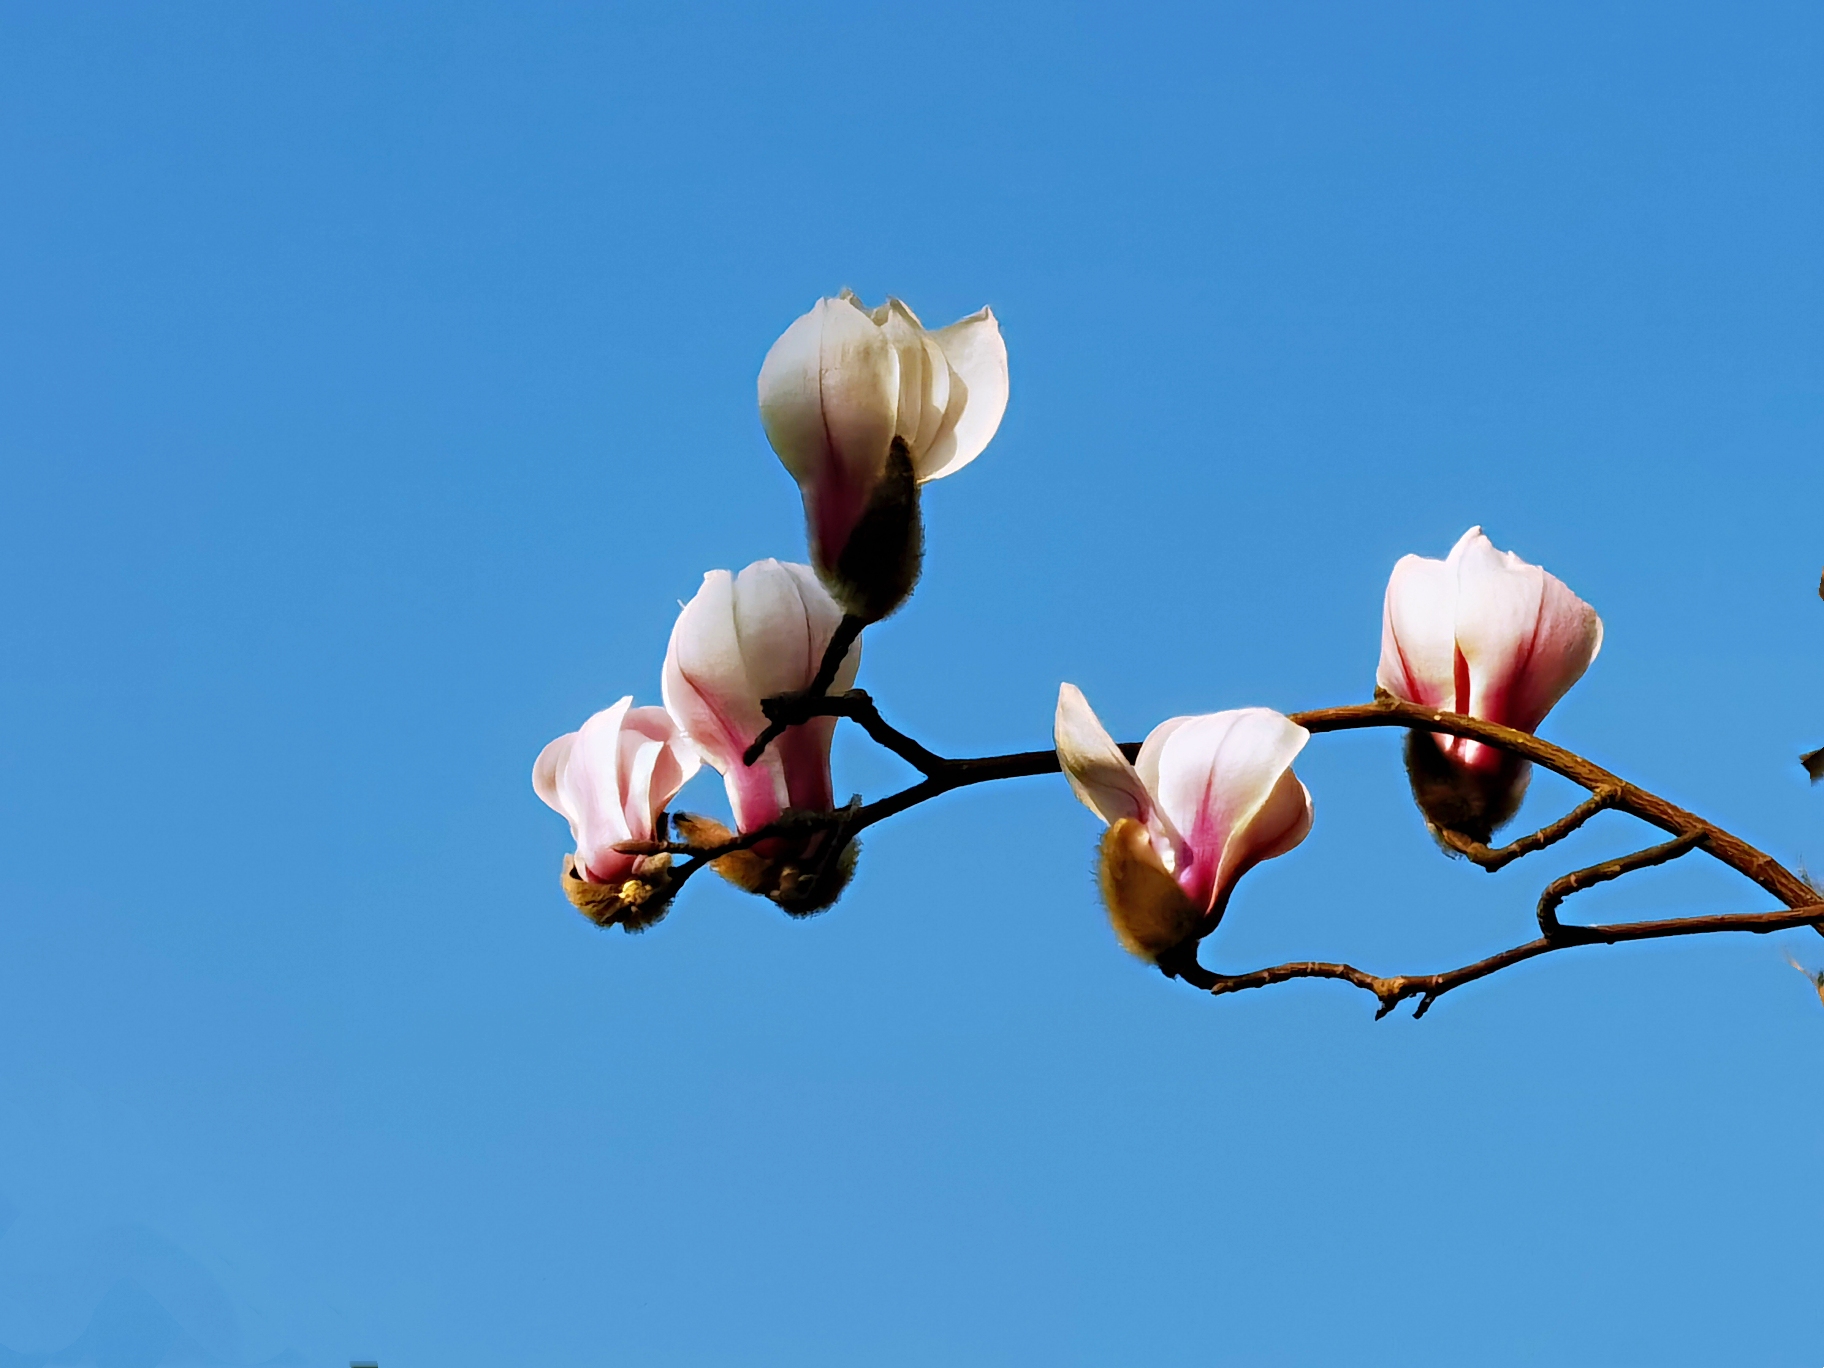 迎春树,辛兰,属木兰科木兰属多年生落叶乔木,是开花最早的玉兰品种